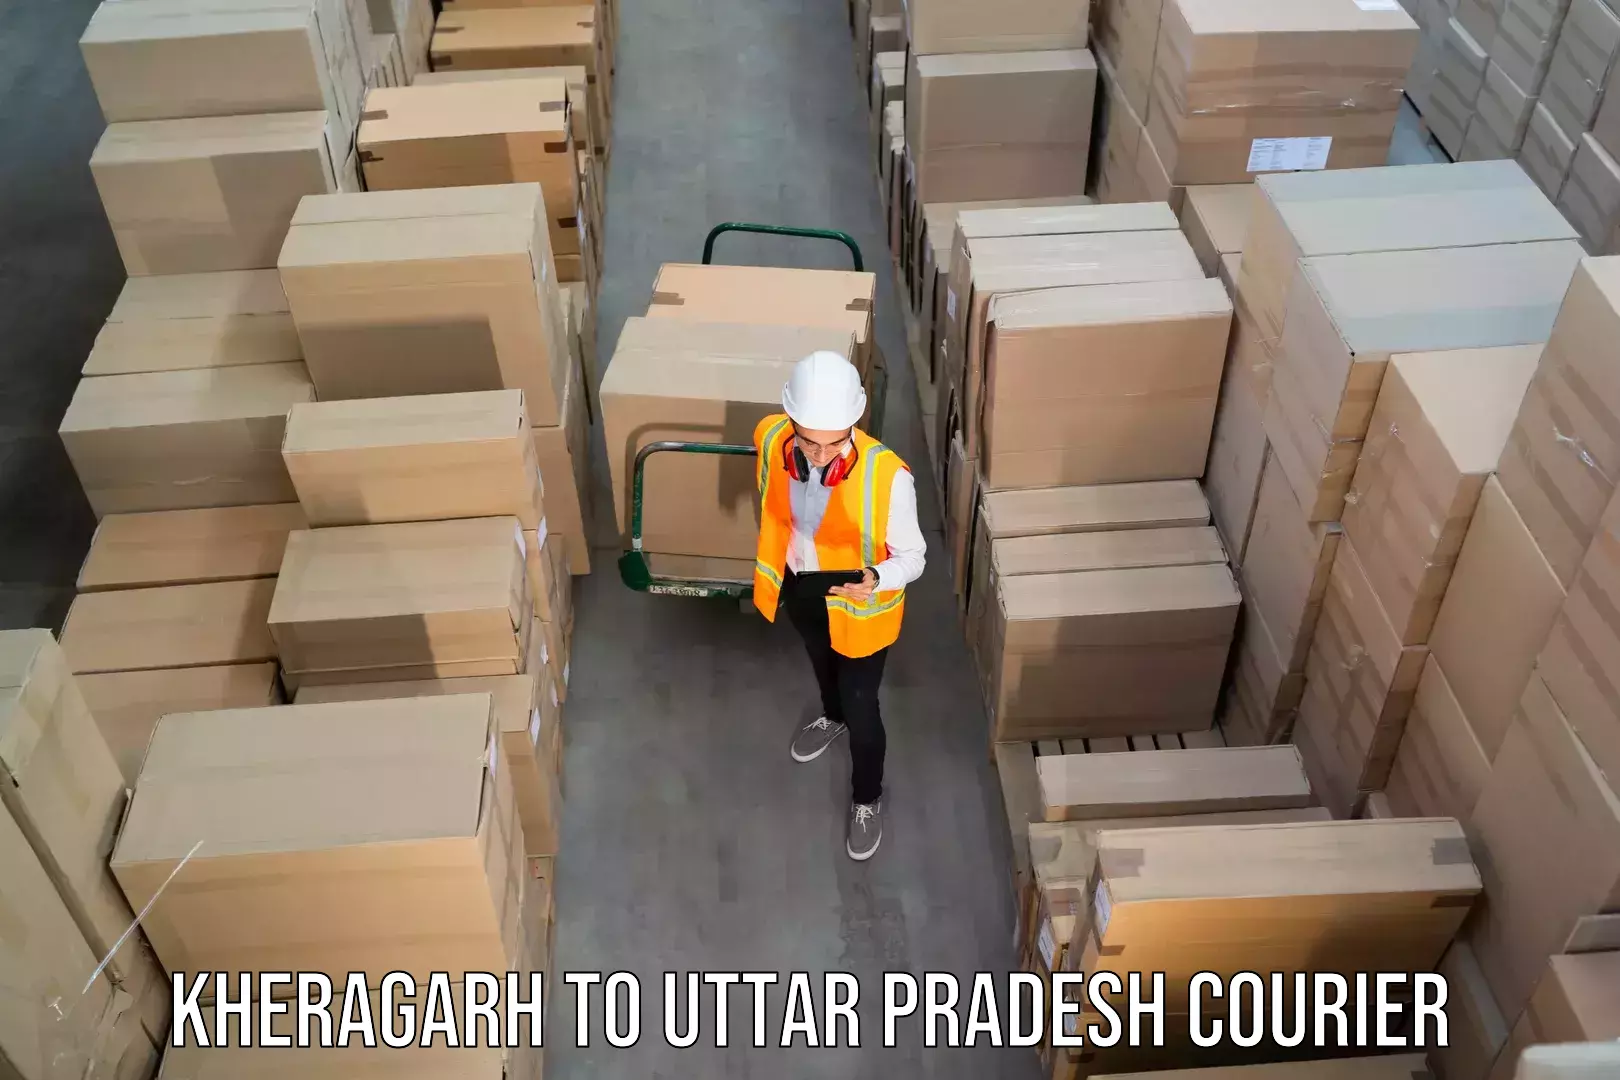 Next day courier Kheragarh to Uttar Pradesh